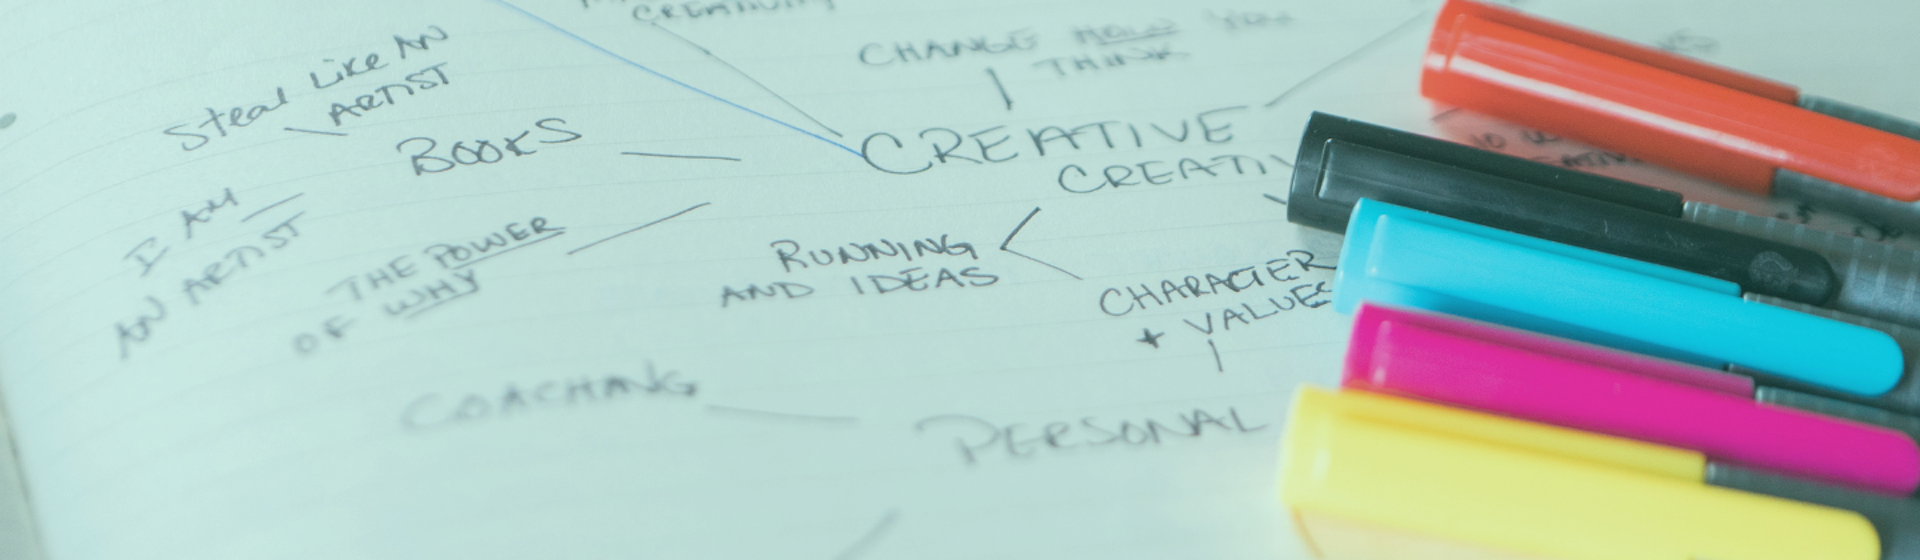 Cuadros sinópticos creativos: organiza tus ideas y ¡libera tu imaginación al máximo!